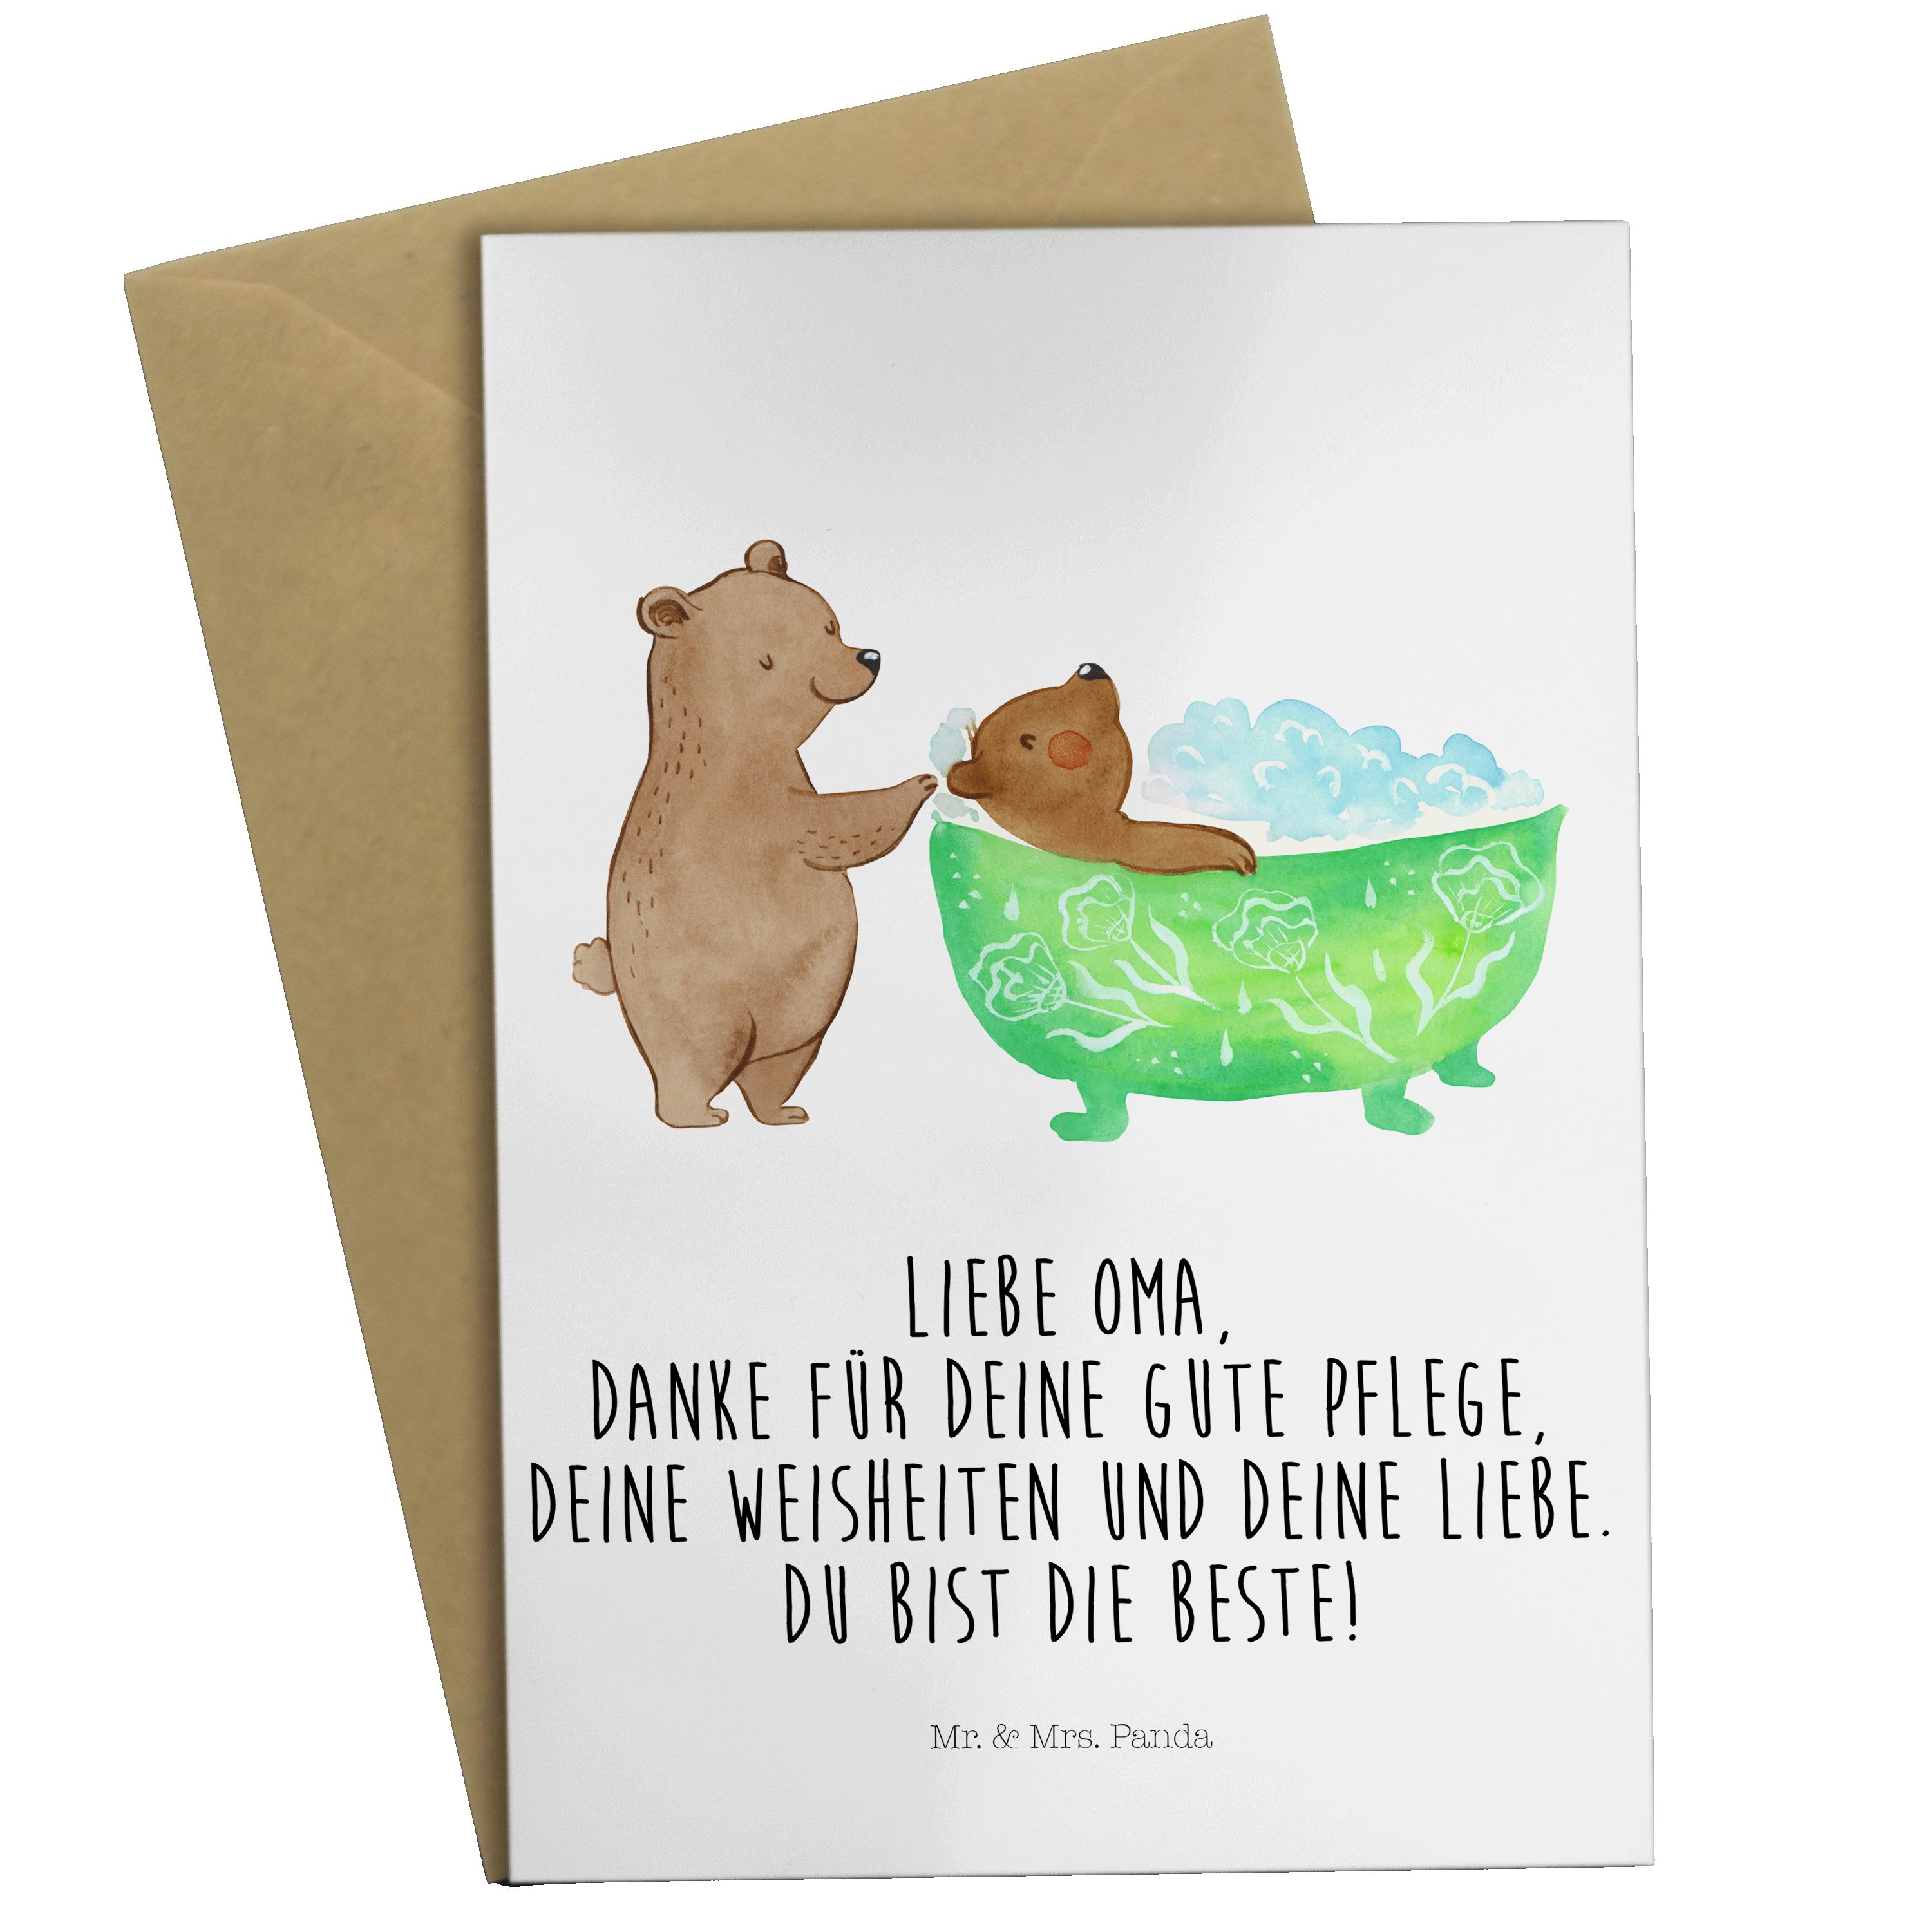 Oma - Panda Grußkarte Geburtstagskarte, Weiß & Badewanne badet Mrs. Papa, Mr. Enkel, - Geschenk,